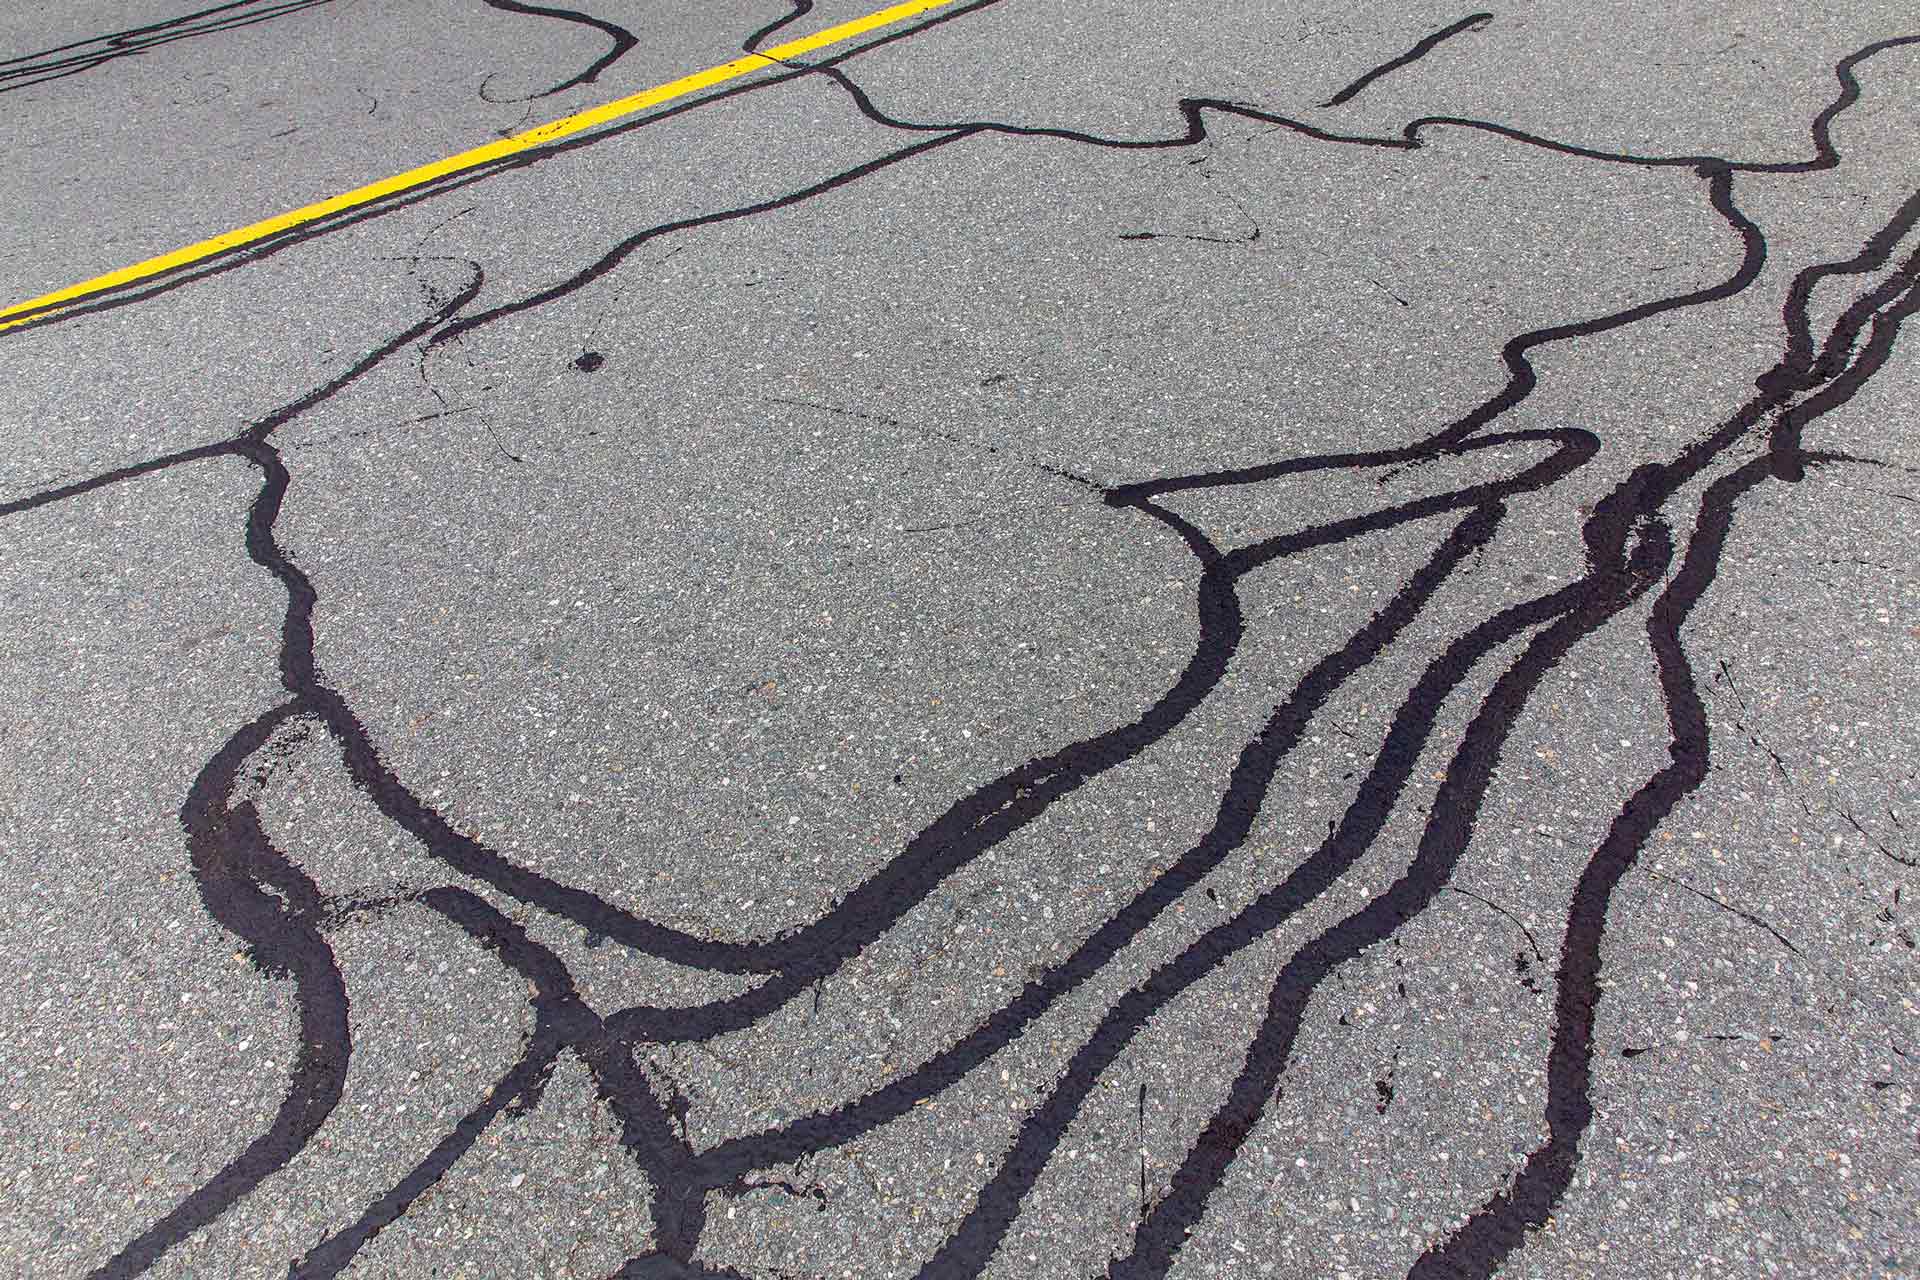 Cracks on asphalt road being repaired